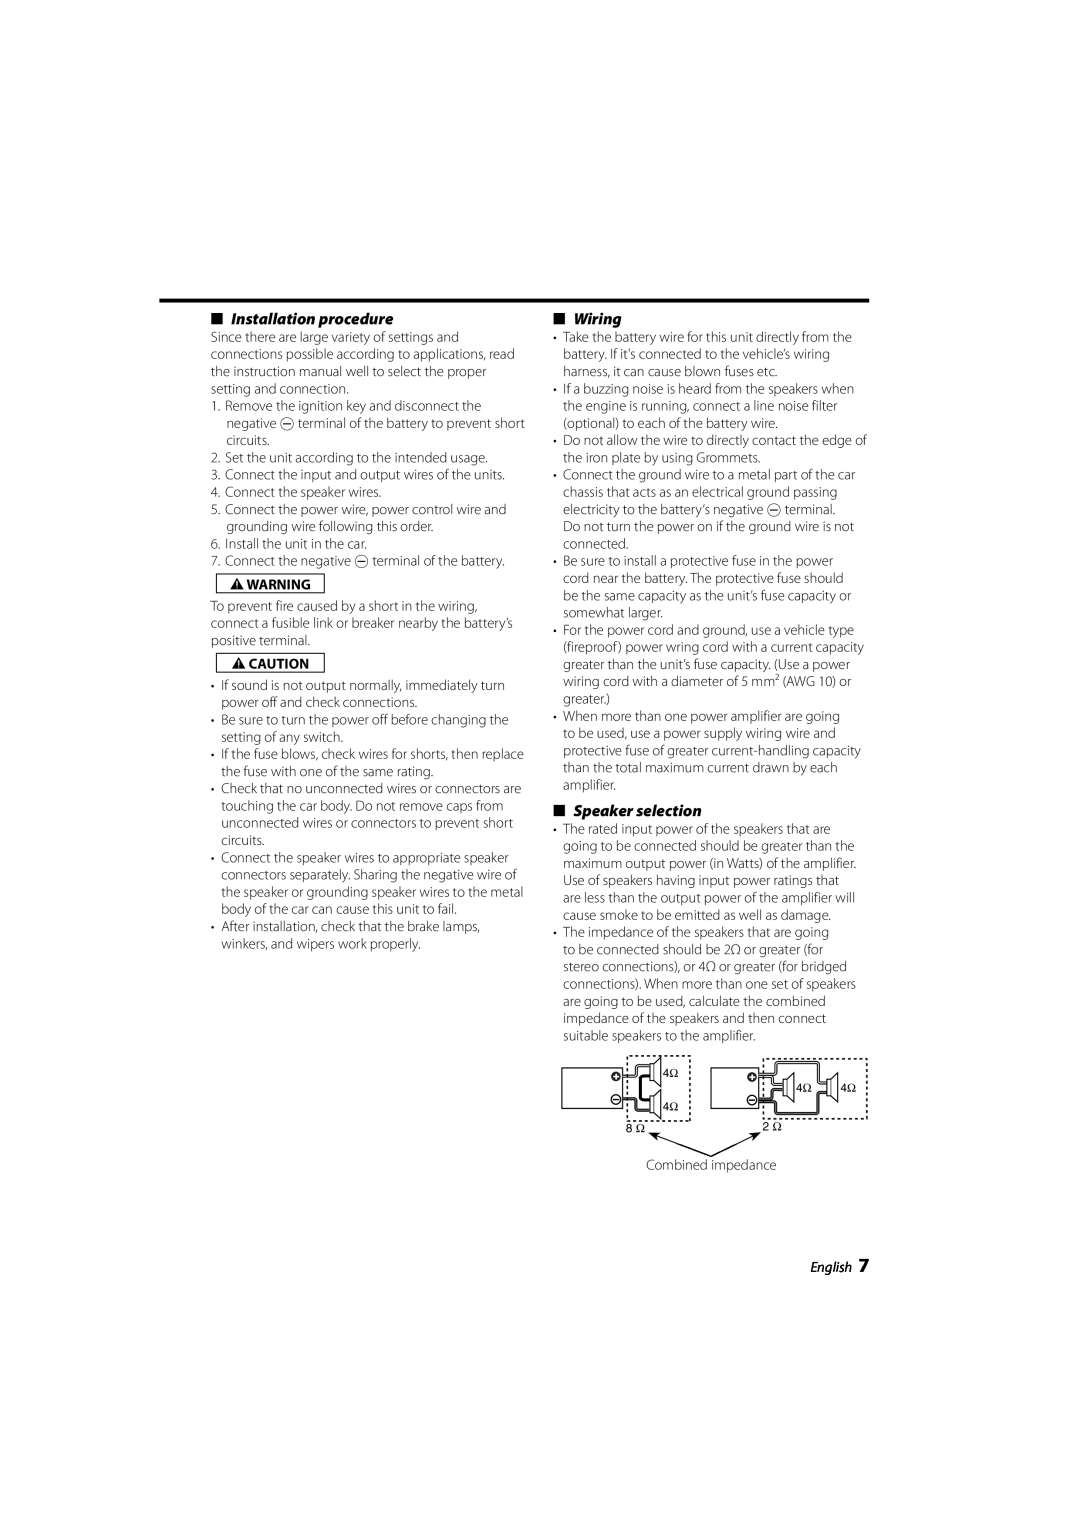 Kenwood KAC-6203 instruction manual Installation procedure, Wiring, Speaker selection, 2WARNING, 2CAUTION, English 